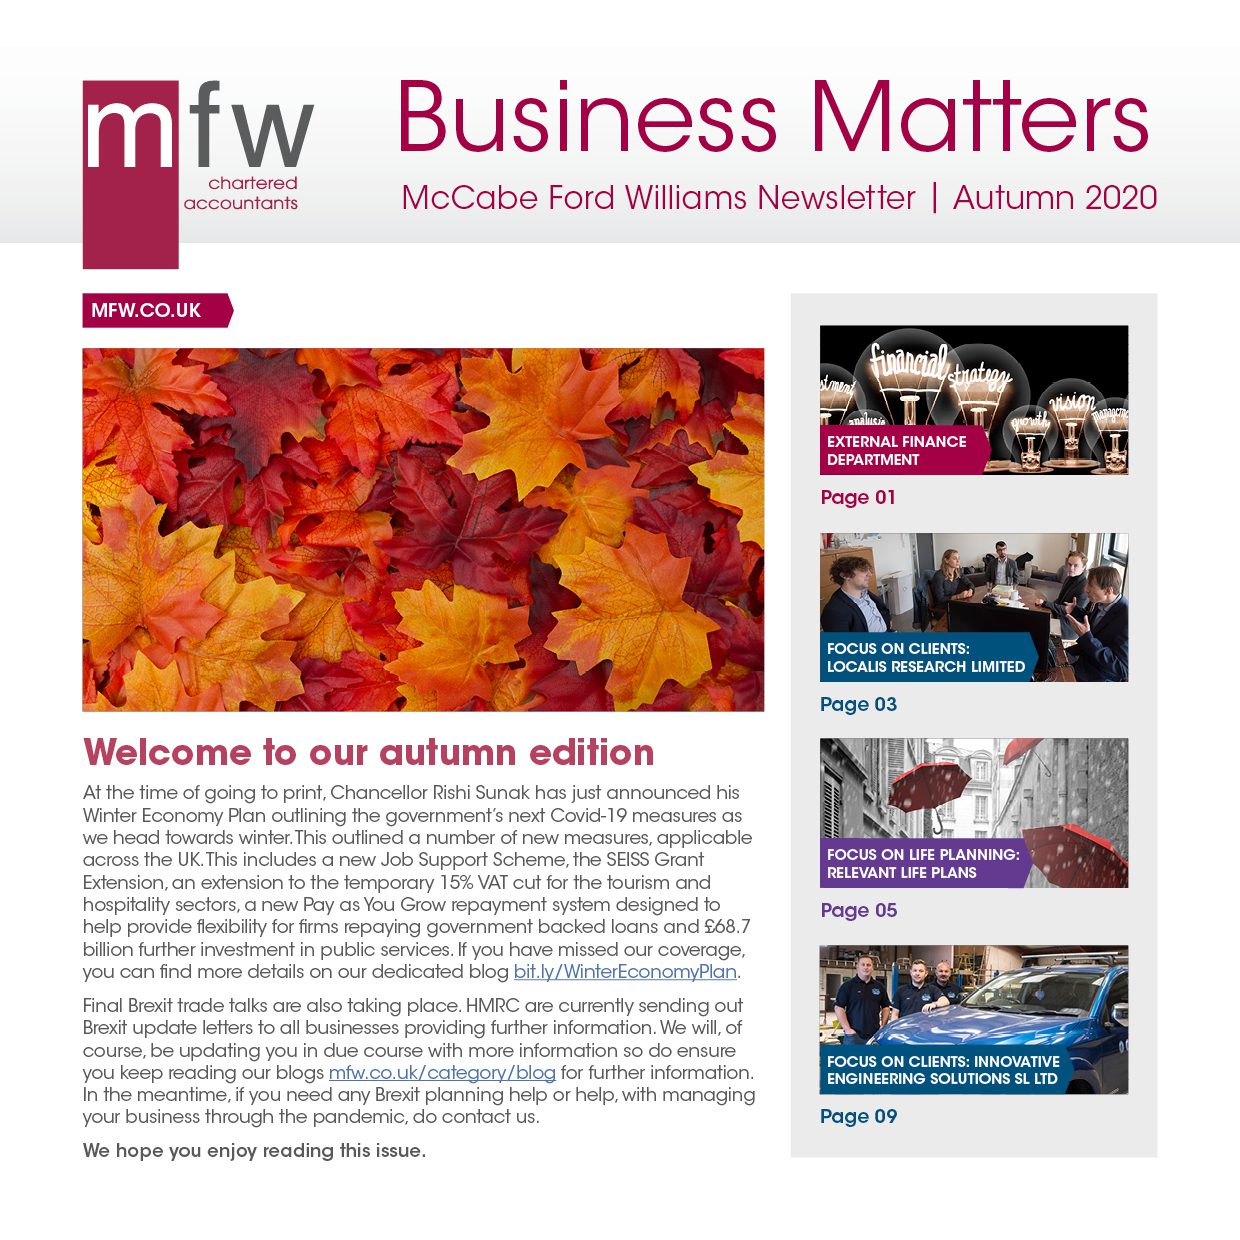 MFW Business Matters newsletter autumn 2020